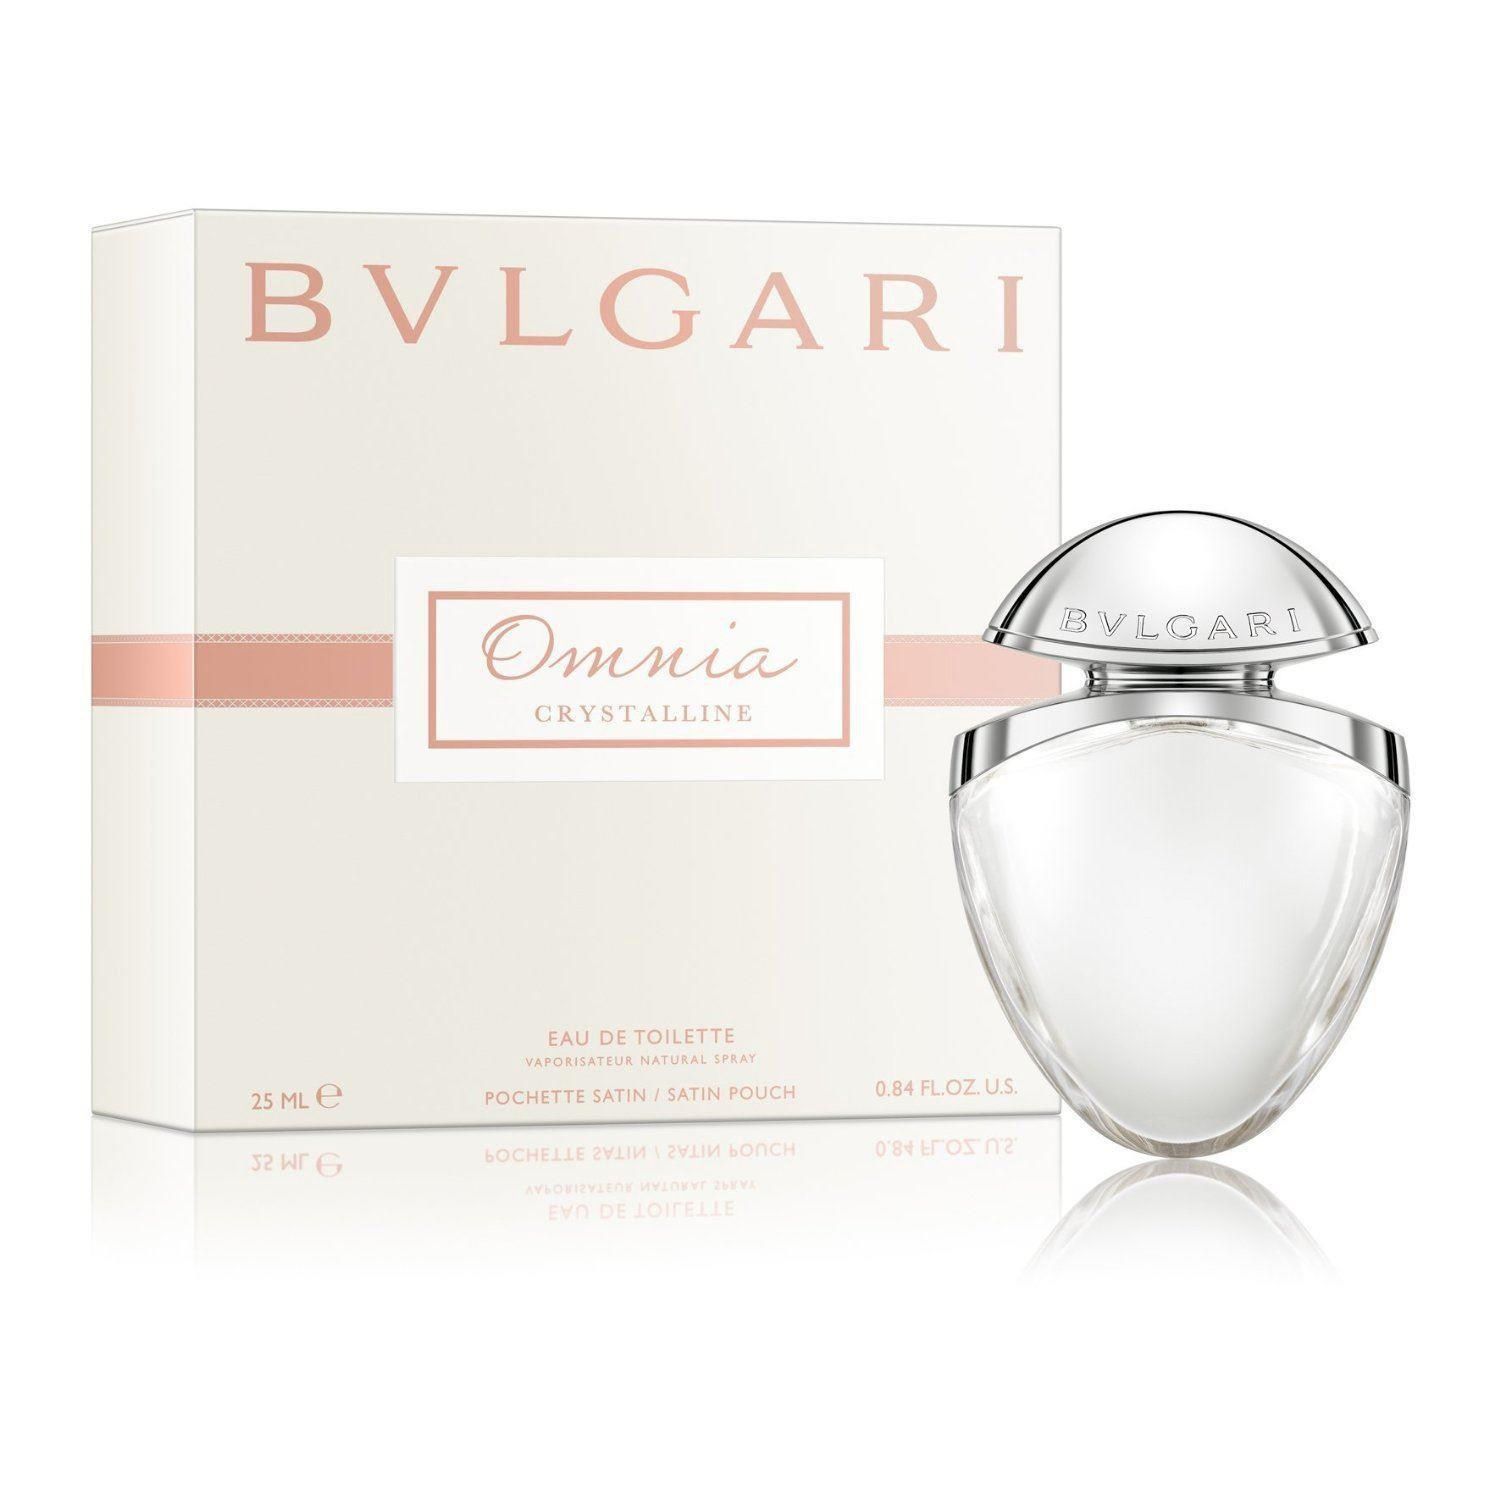 bvlgari perfume price canada